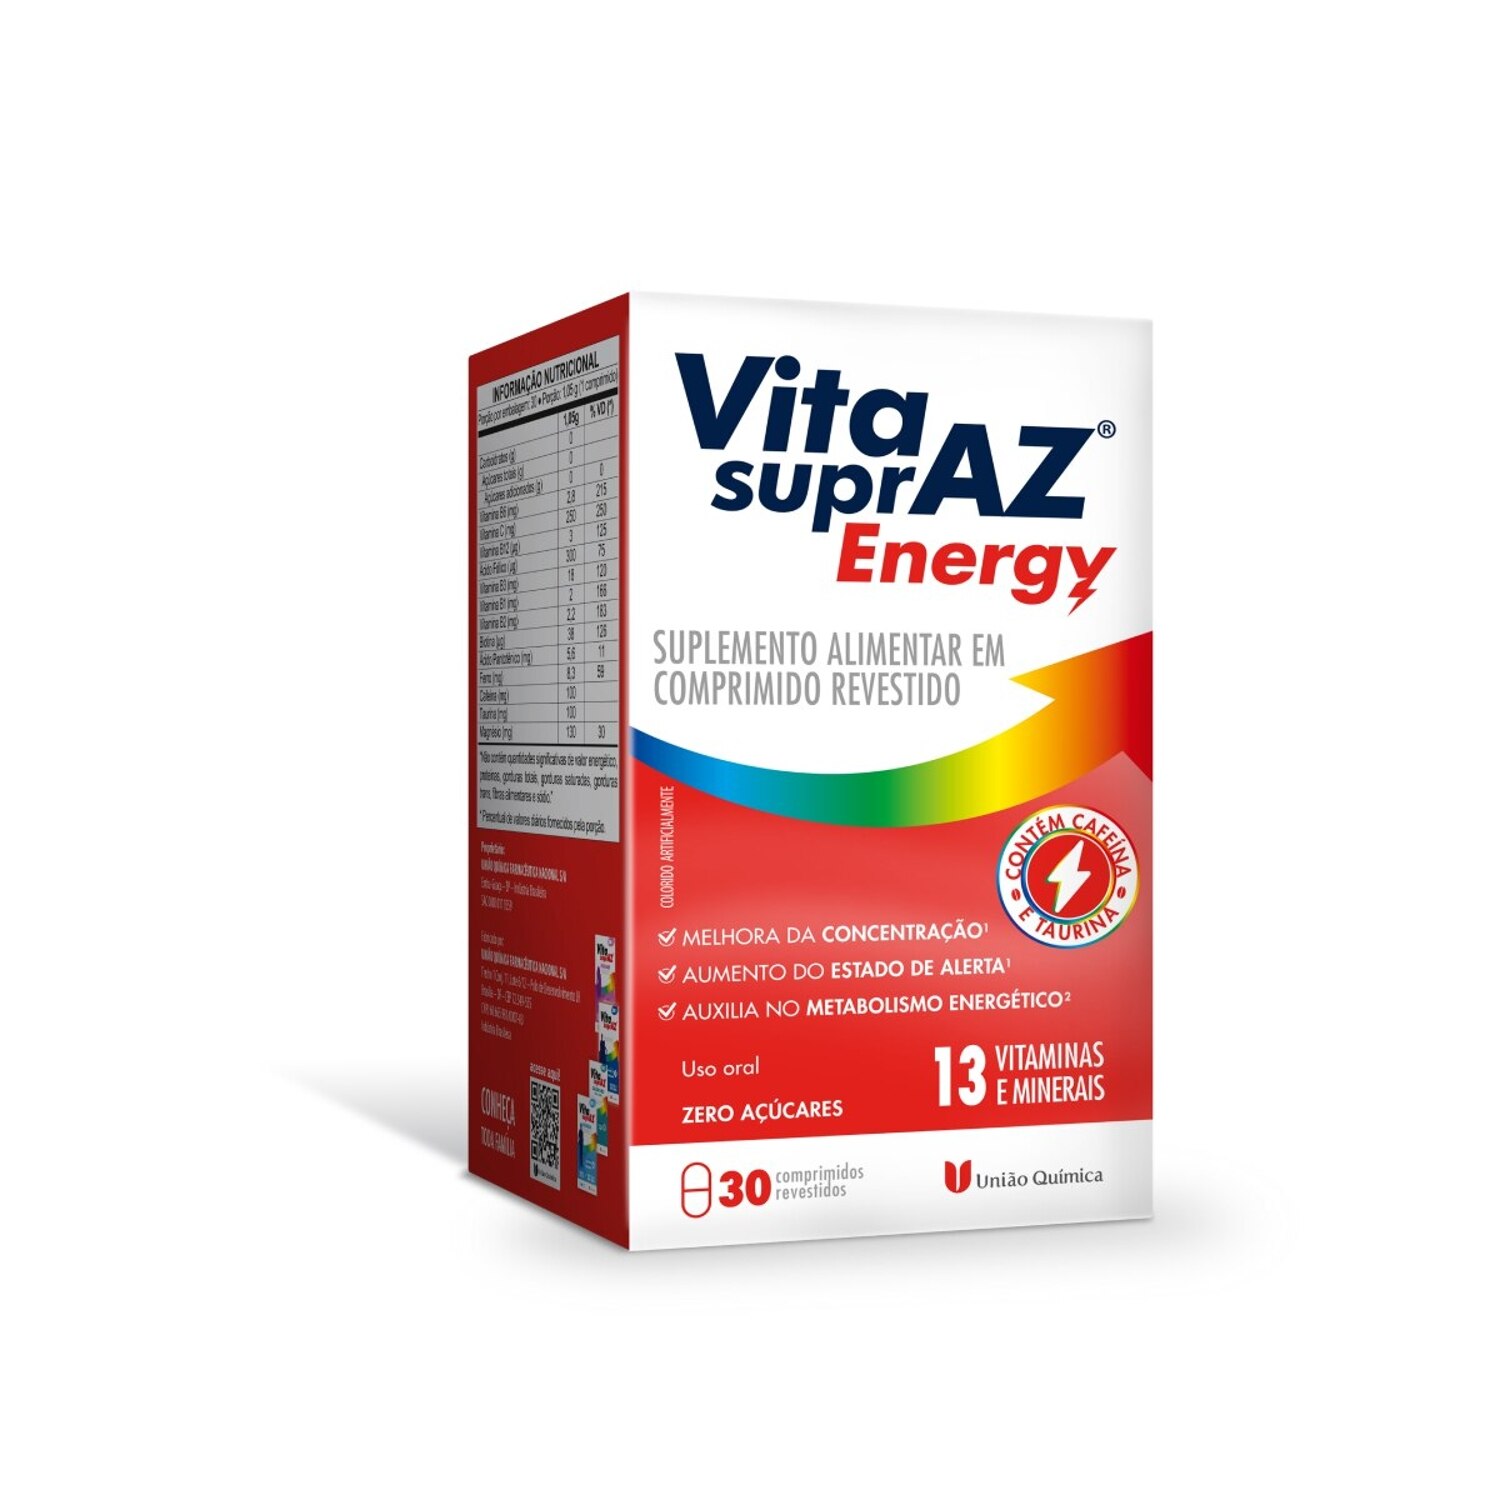 Vita SuprAZ Energy 30 Comprimidos Revestidos